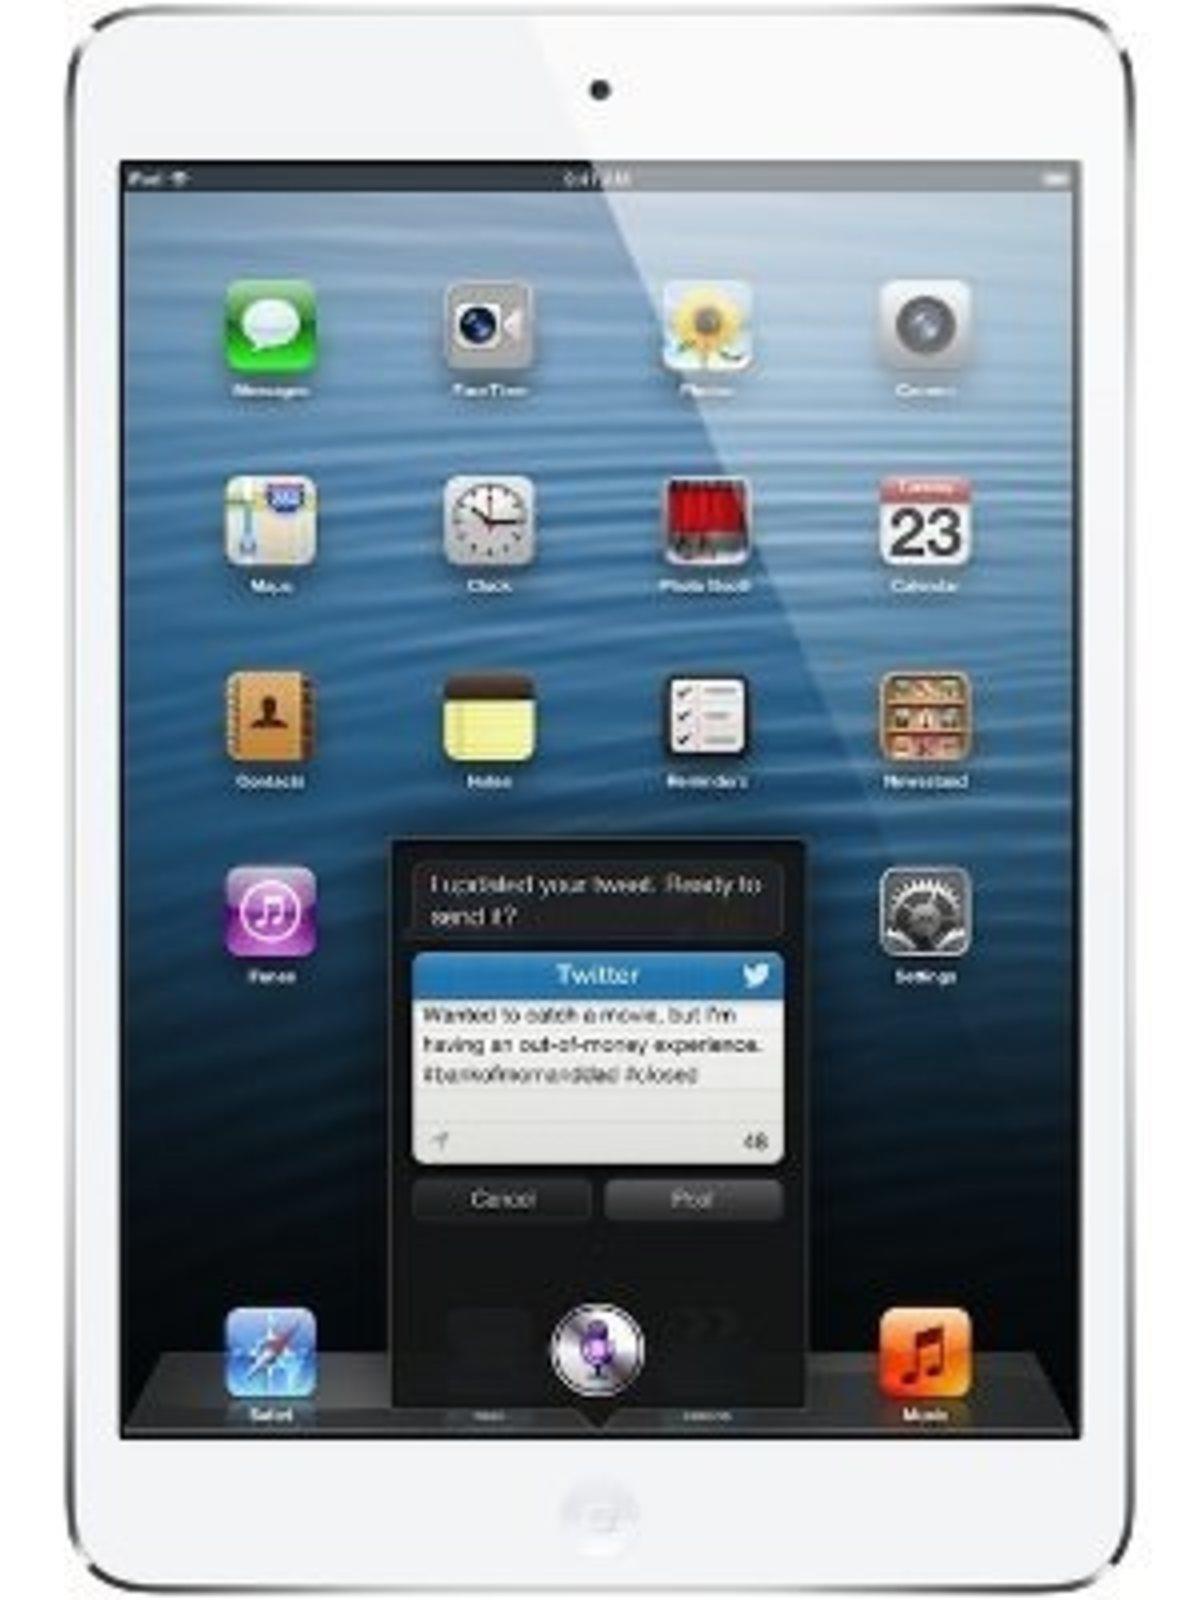 Apple iPad mini 2 32GB WiFi